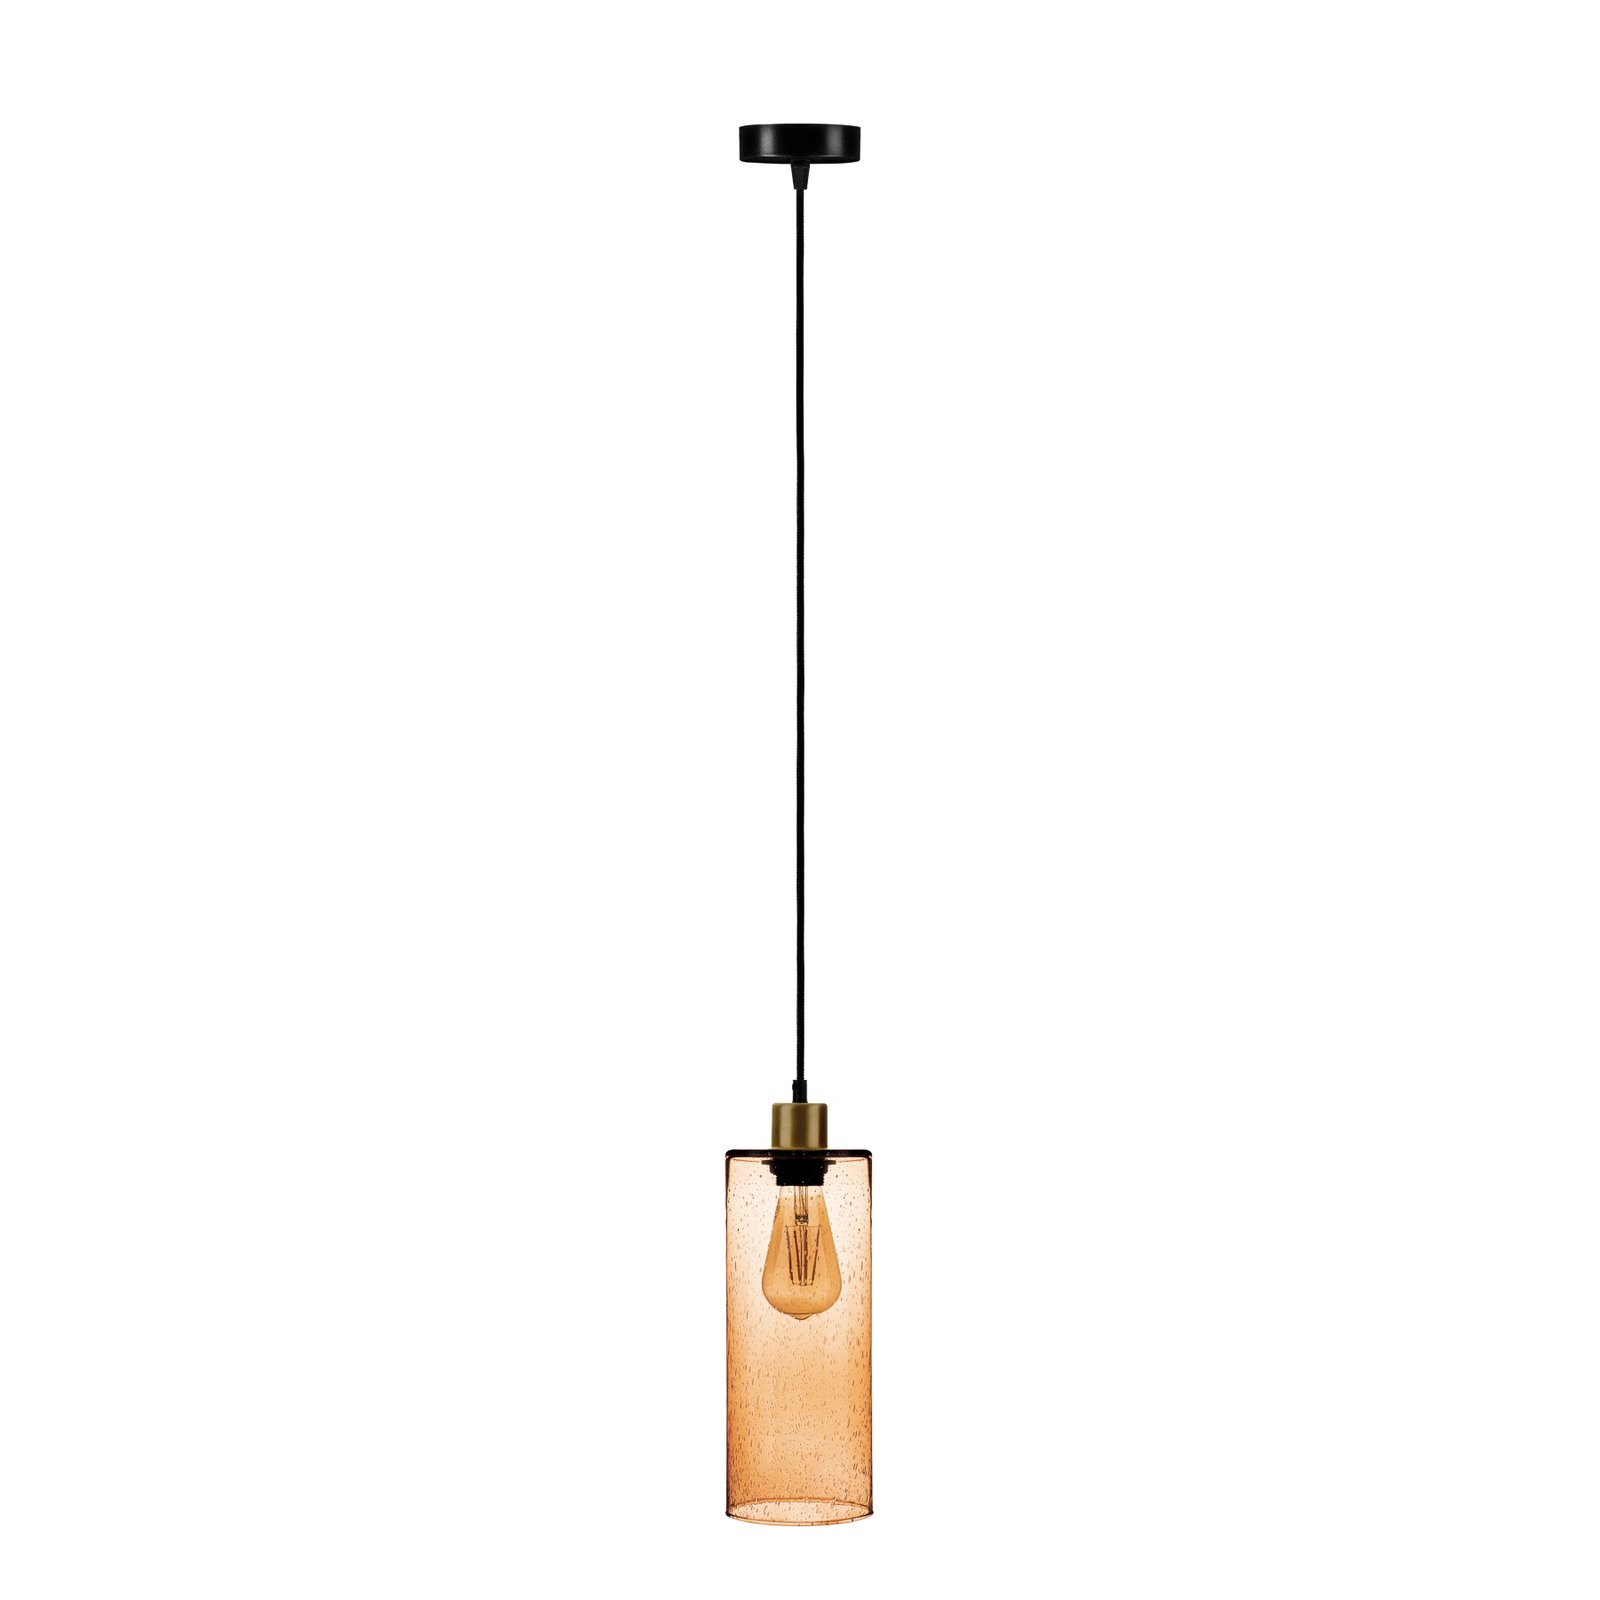 Soda hanging light glass cylinder light brown Ø 12cm